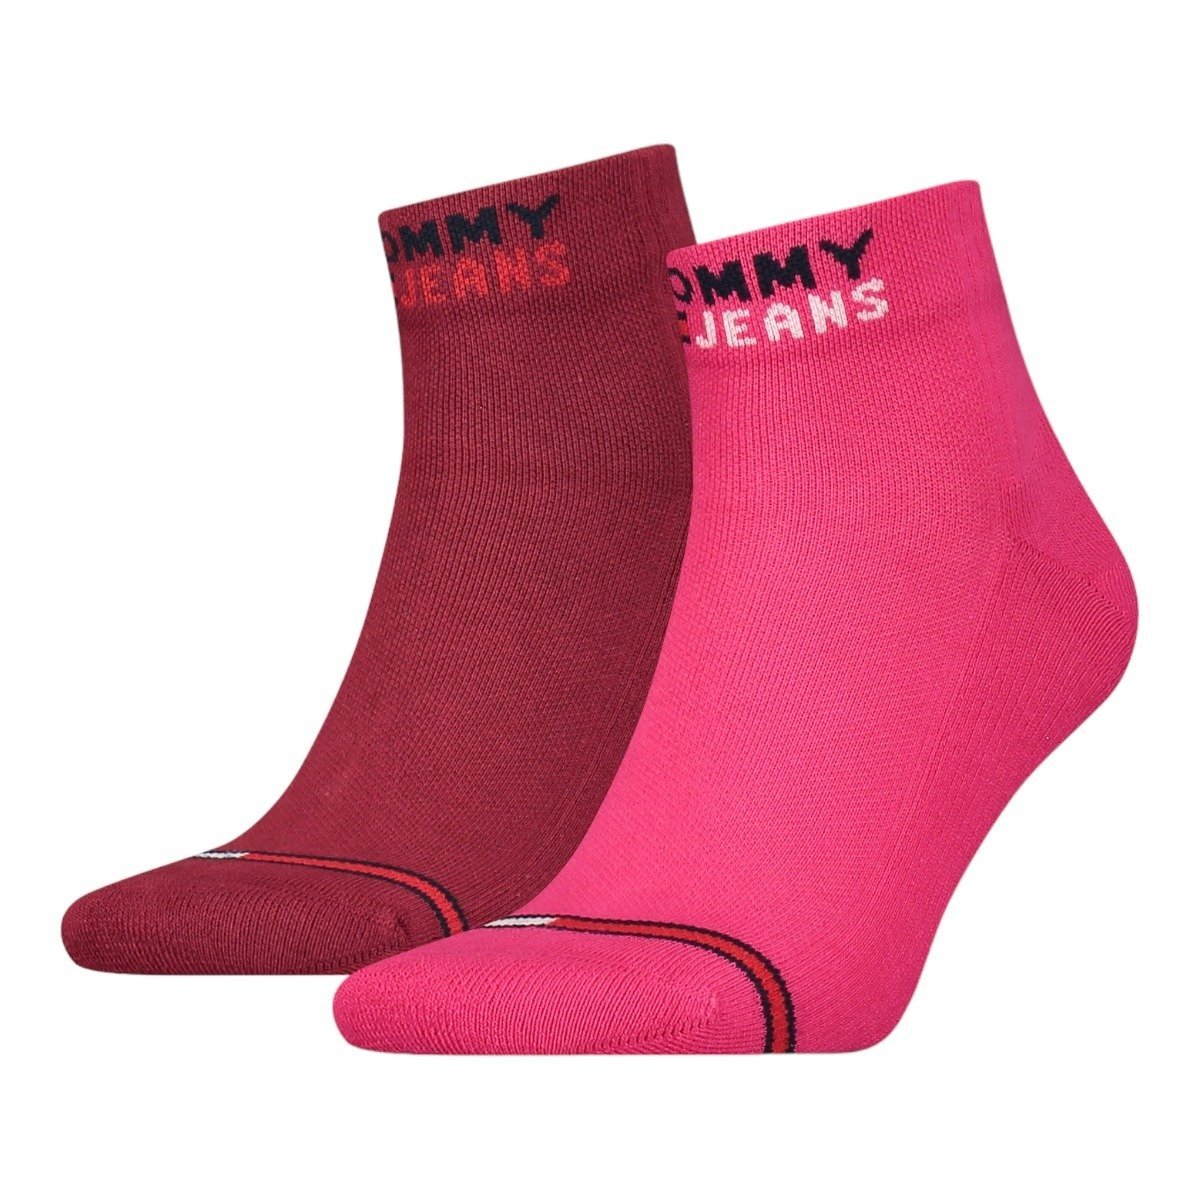 Tommy Hilfiger Jeans Woman's Tommy Hilfiger 2Pack Socks 701218956011 Pink/Burgundy